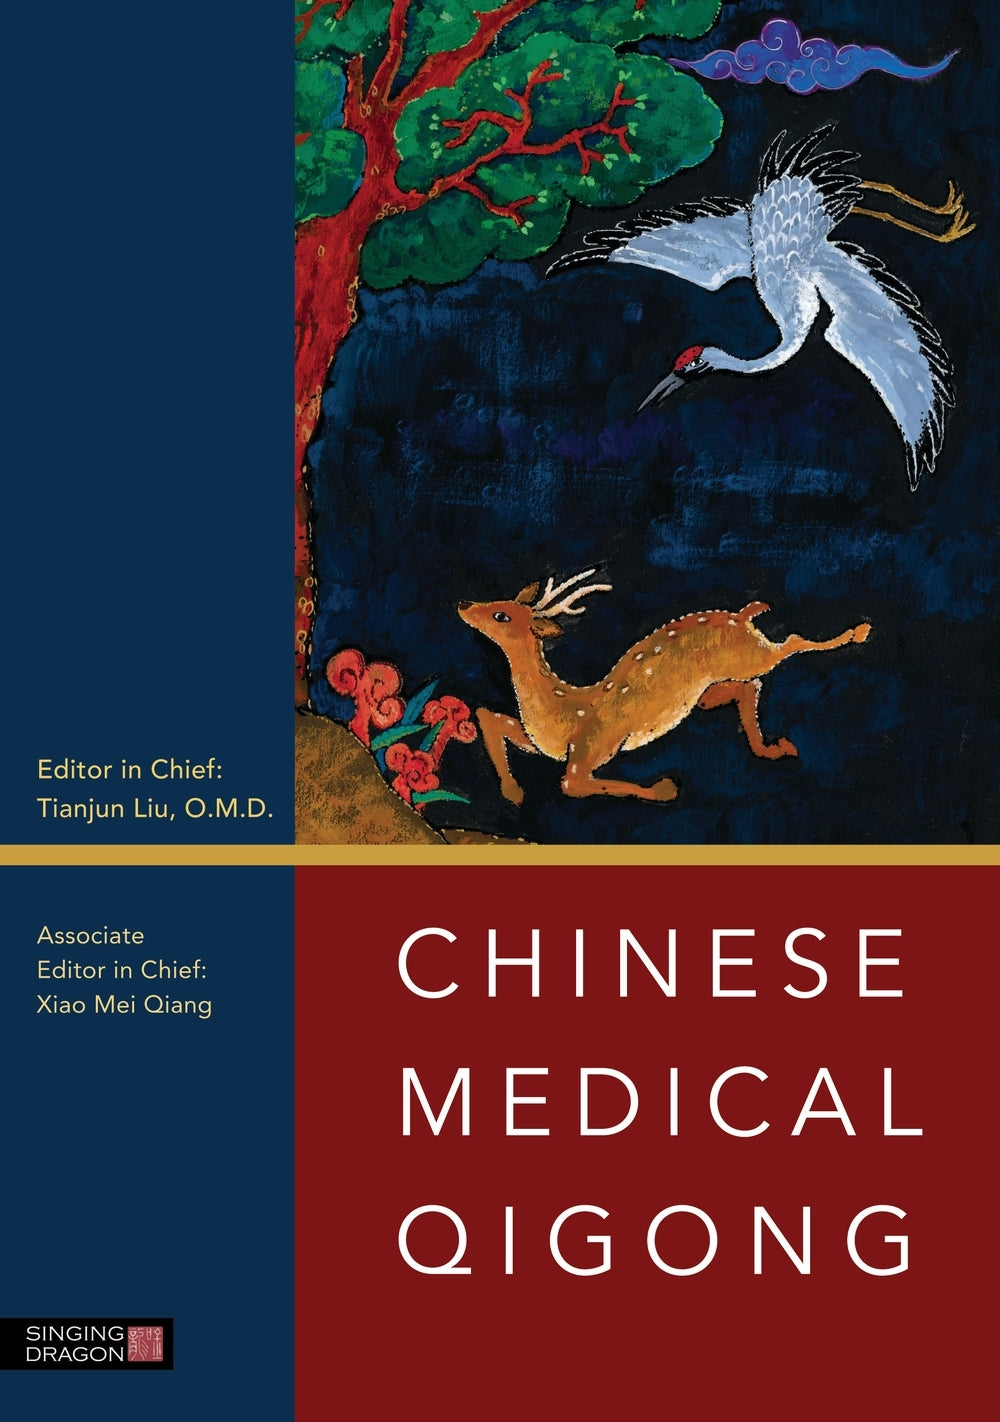 Chinese Medical Qigong by Xiao Mei Qiang, Tianjun Liu, No Author Listed